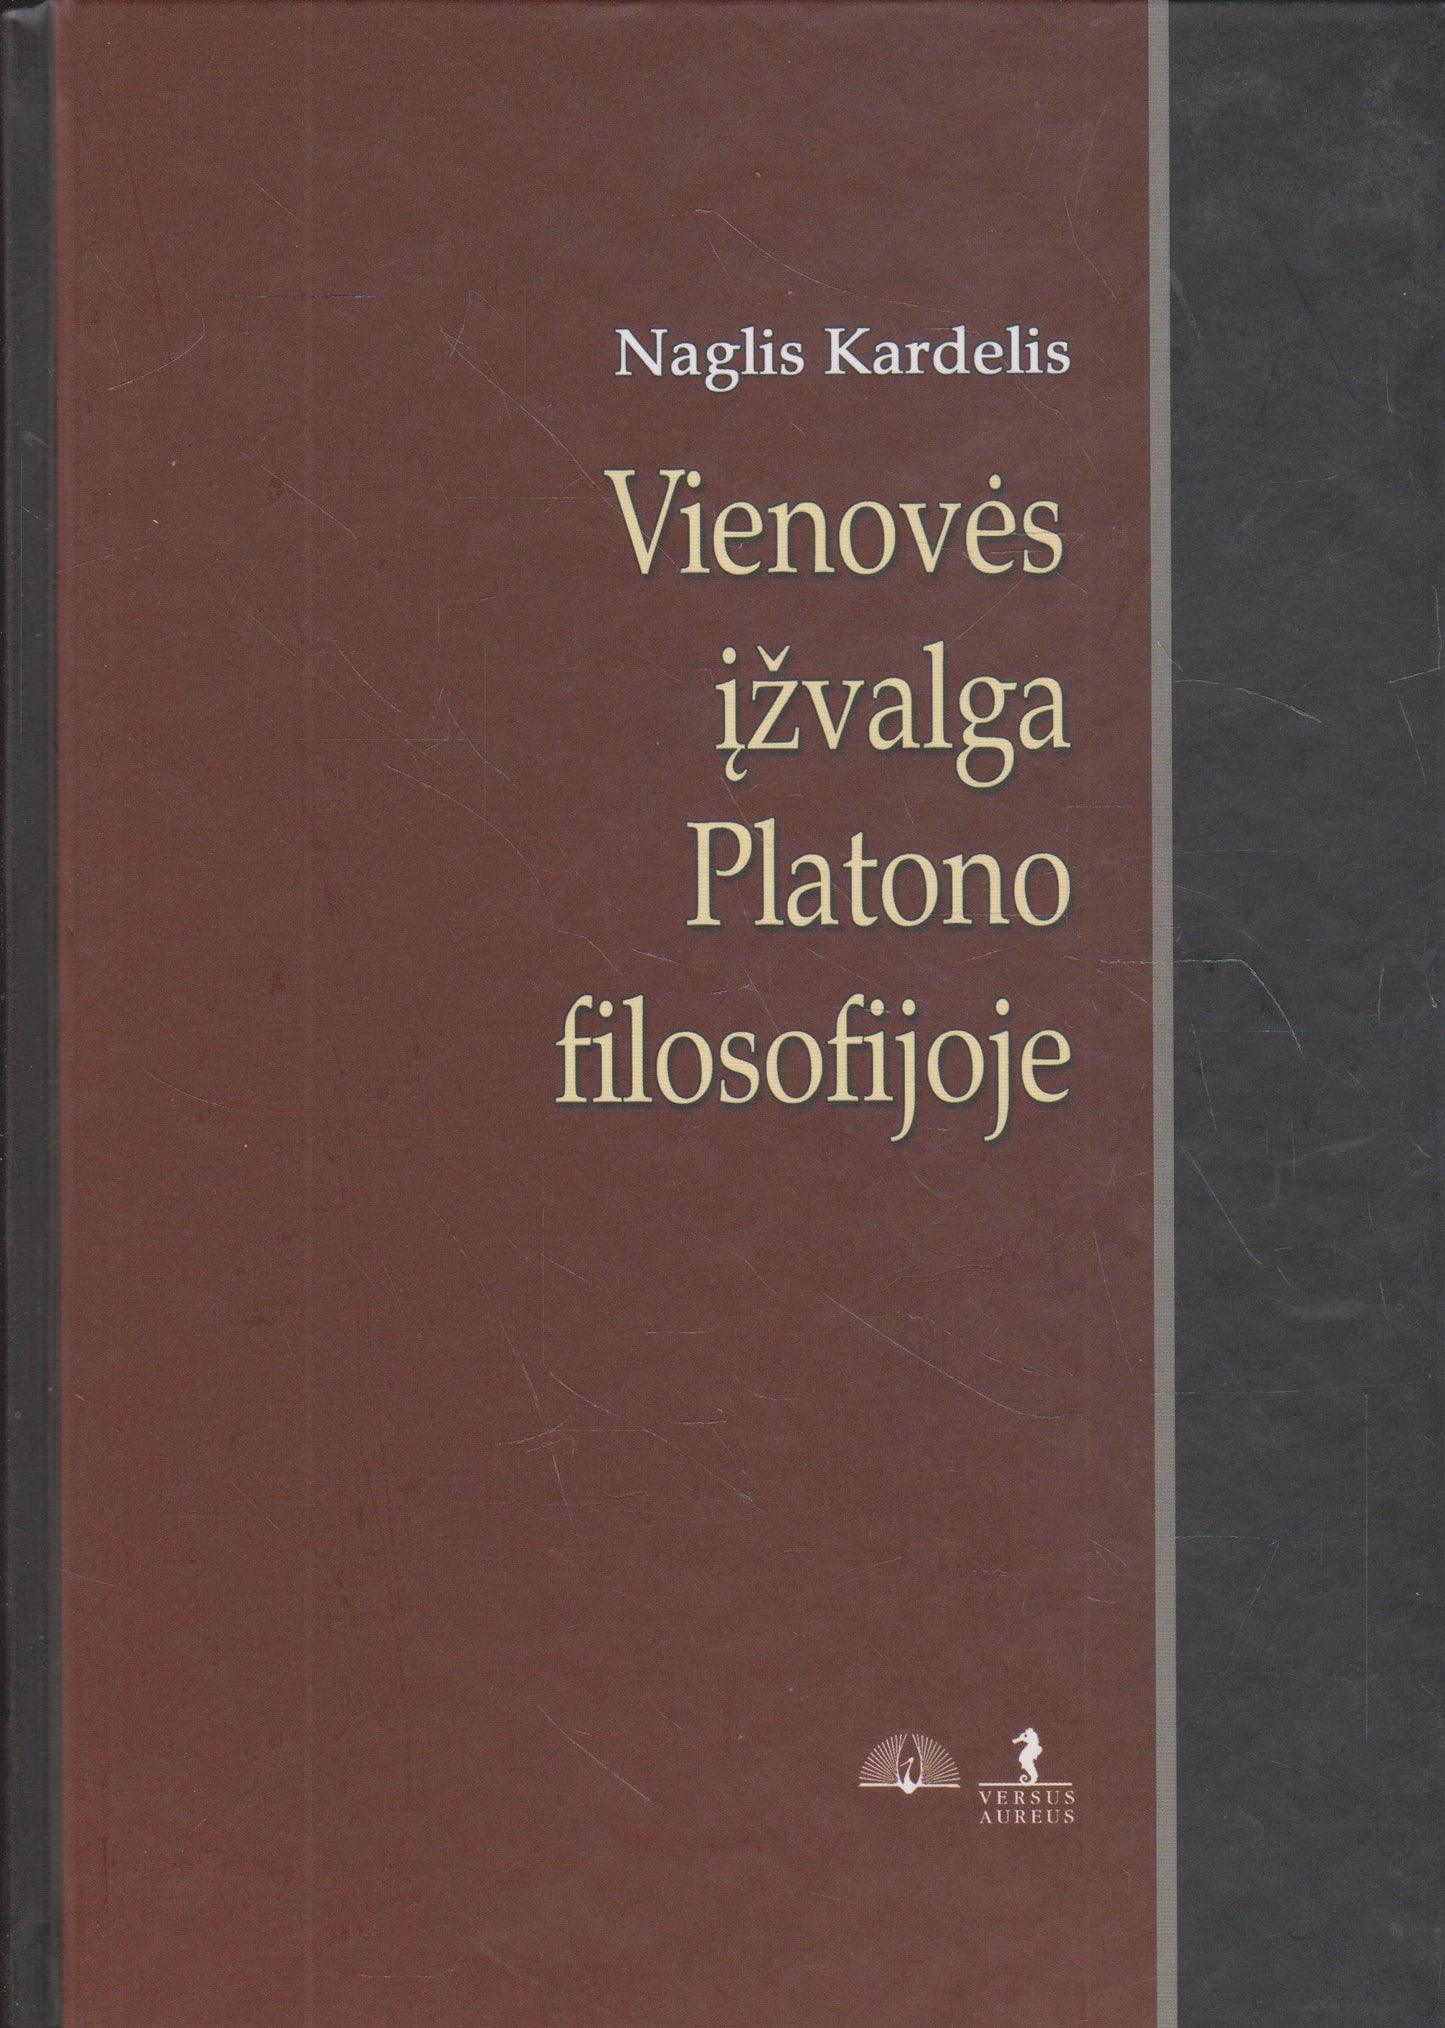 Naglis Kardelis - Vienovės įžvalga Platono filosofijoje